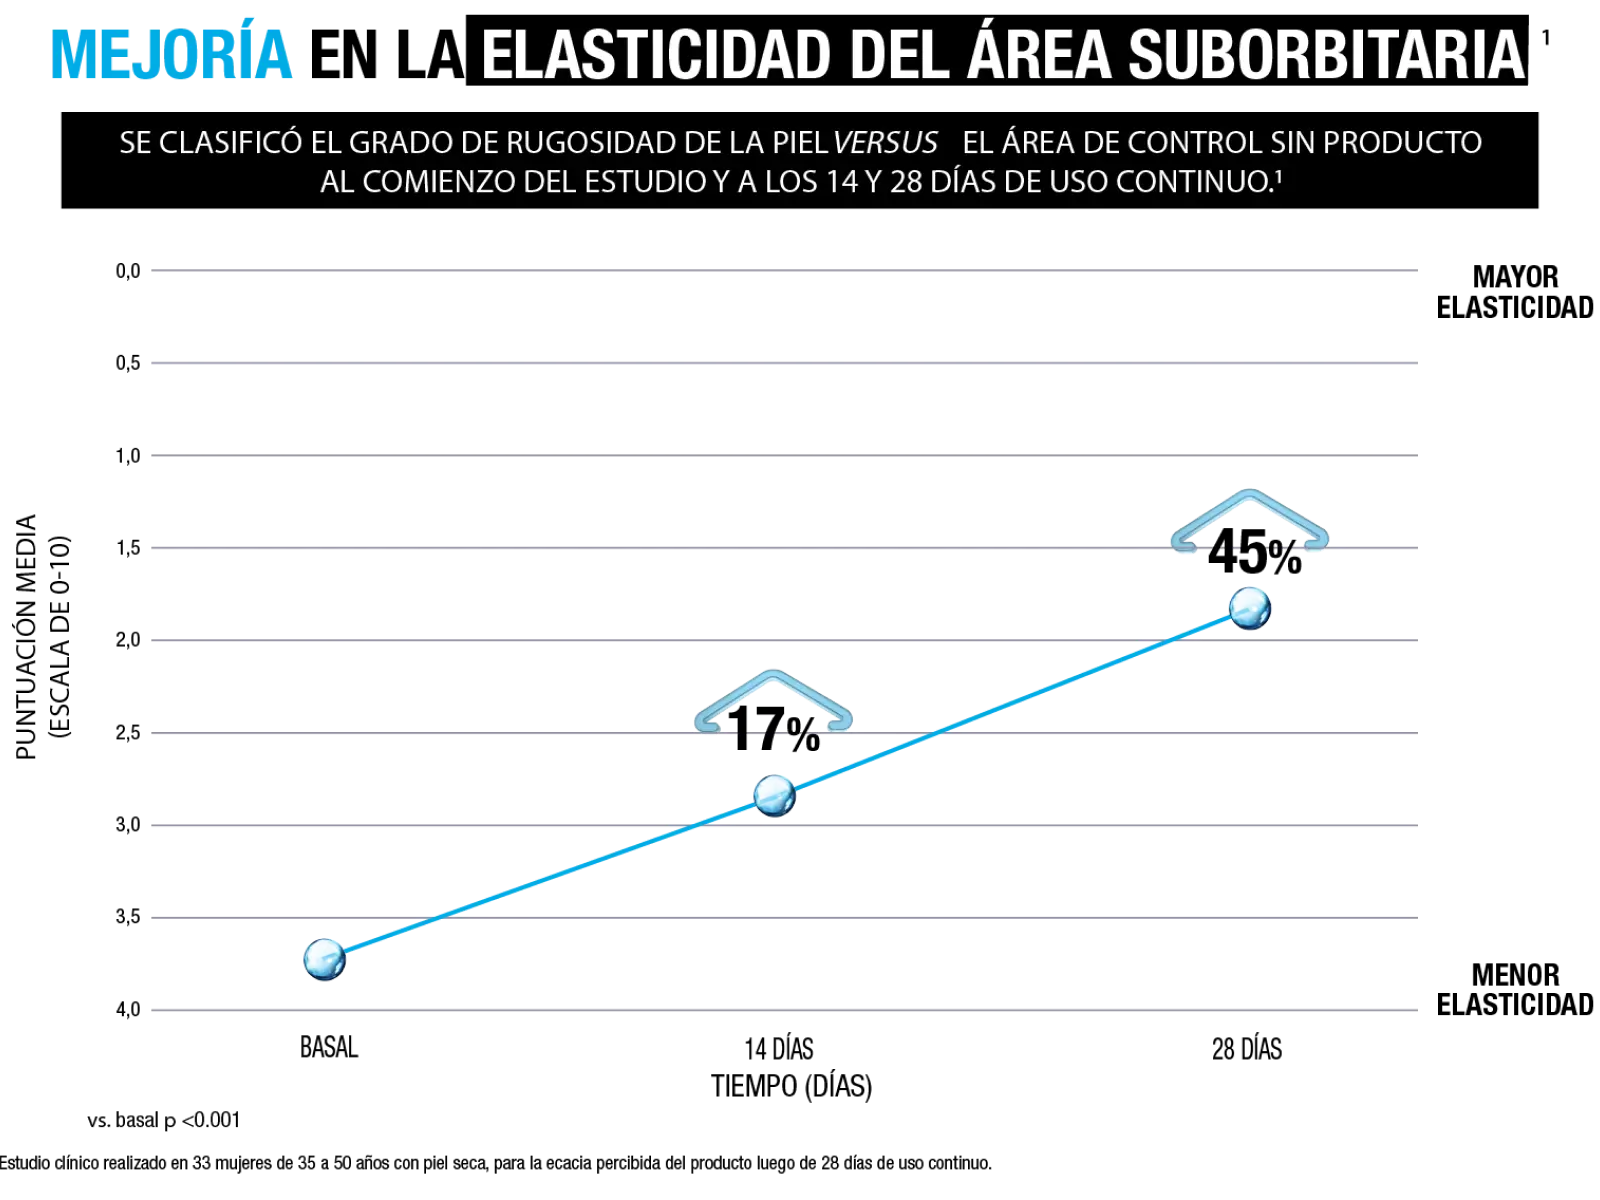 Gráfico: Mejoría en la eñasticidad del área suborbitaria